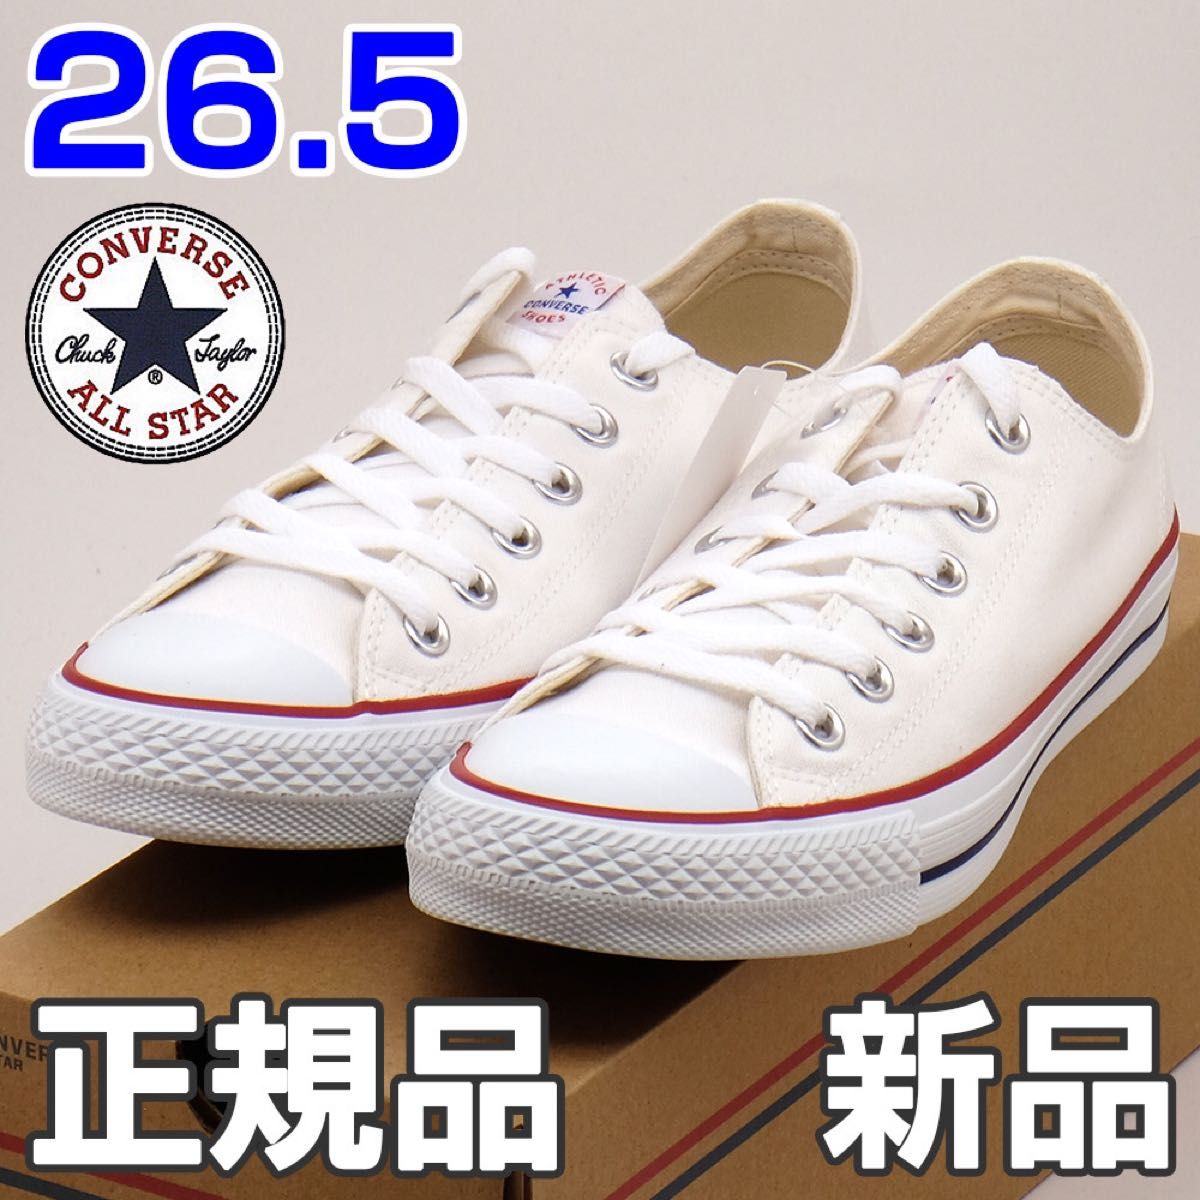 コンバース スニーカー メンズ ネクスター ホワイト 白 26.5cm  CONVERSE カジュアル シンプル 定番 男性 靴